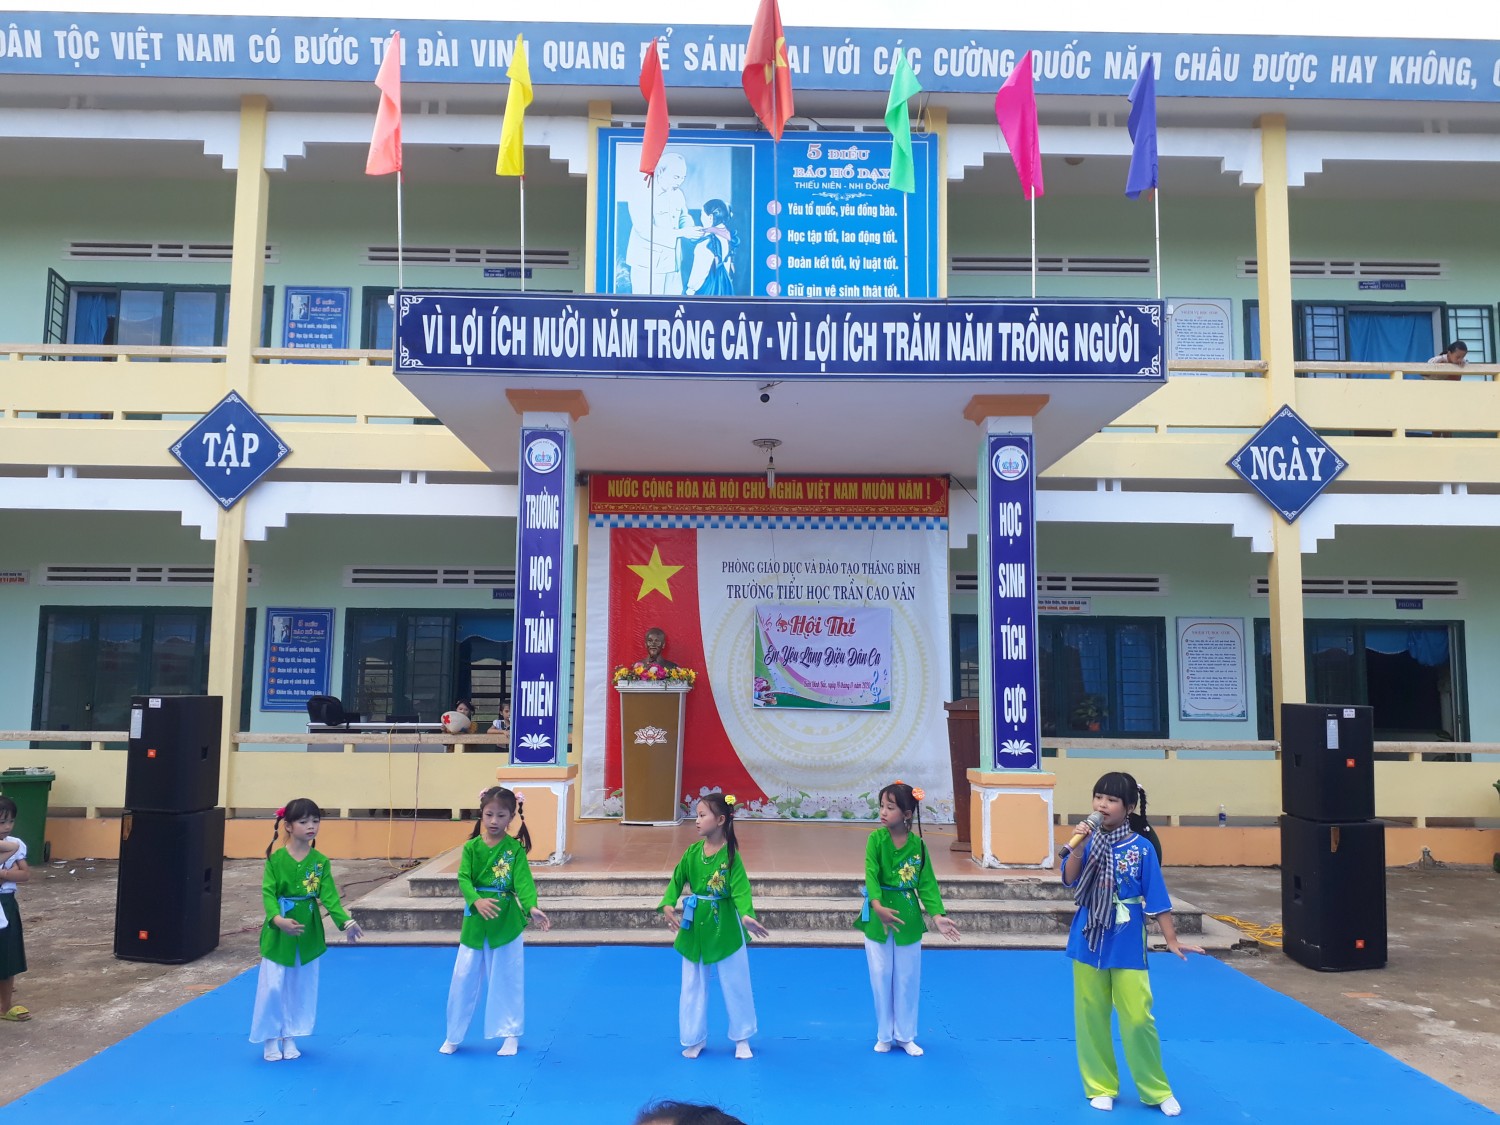 Liên đội Trần Cao Vân tổ chức Hội thi Em yêu làng điệu dân ca.